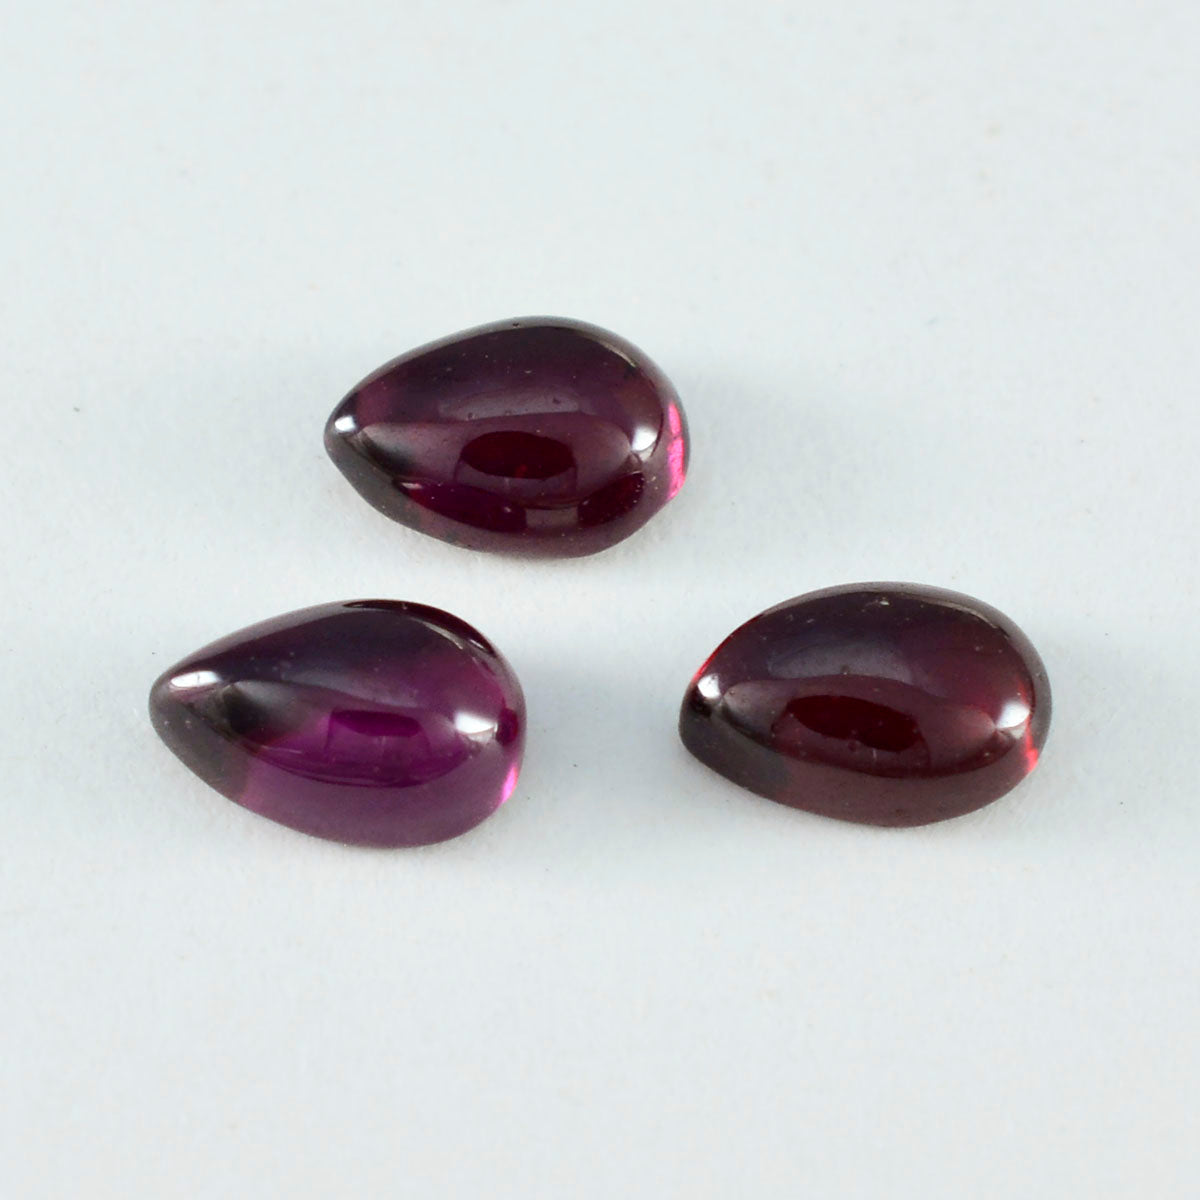 Riyogems 1PC Red Garnet Cabochon 6x9 mm Pear Shape wonderful Quality Gems